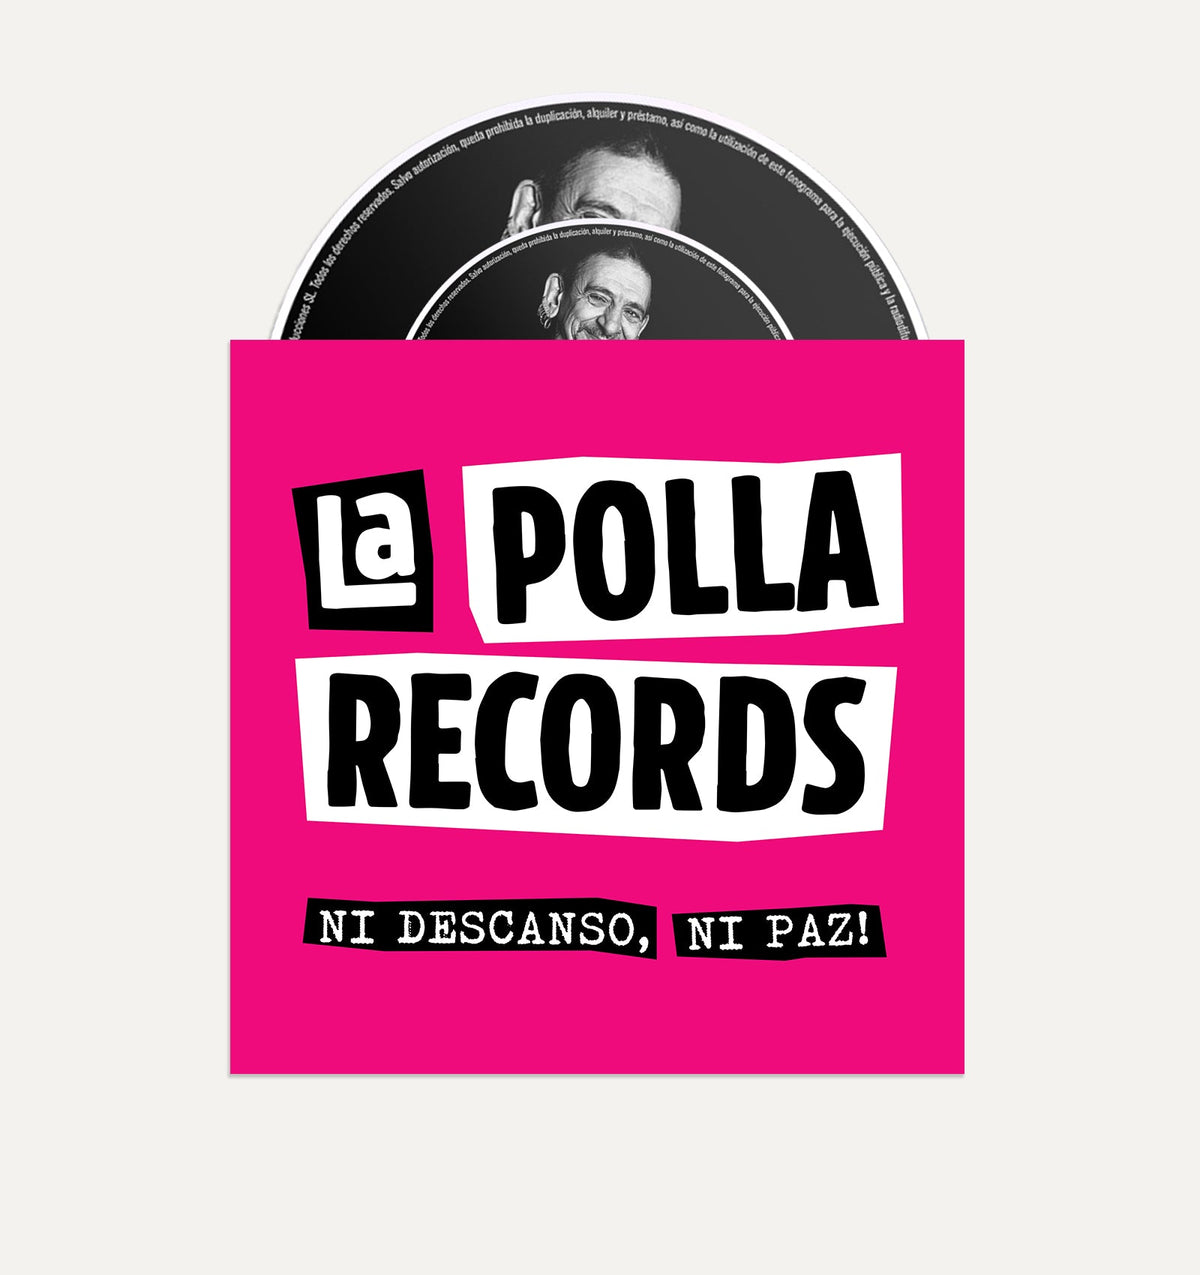 La Polla Records - Pack Vinilo + CD "Ni descanso, ni paz!" - D2fy - La Polla Records